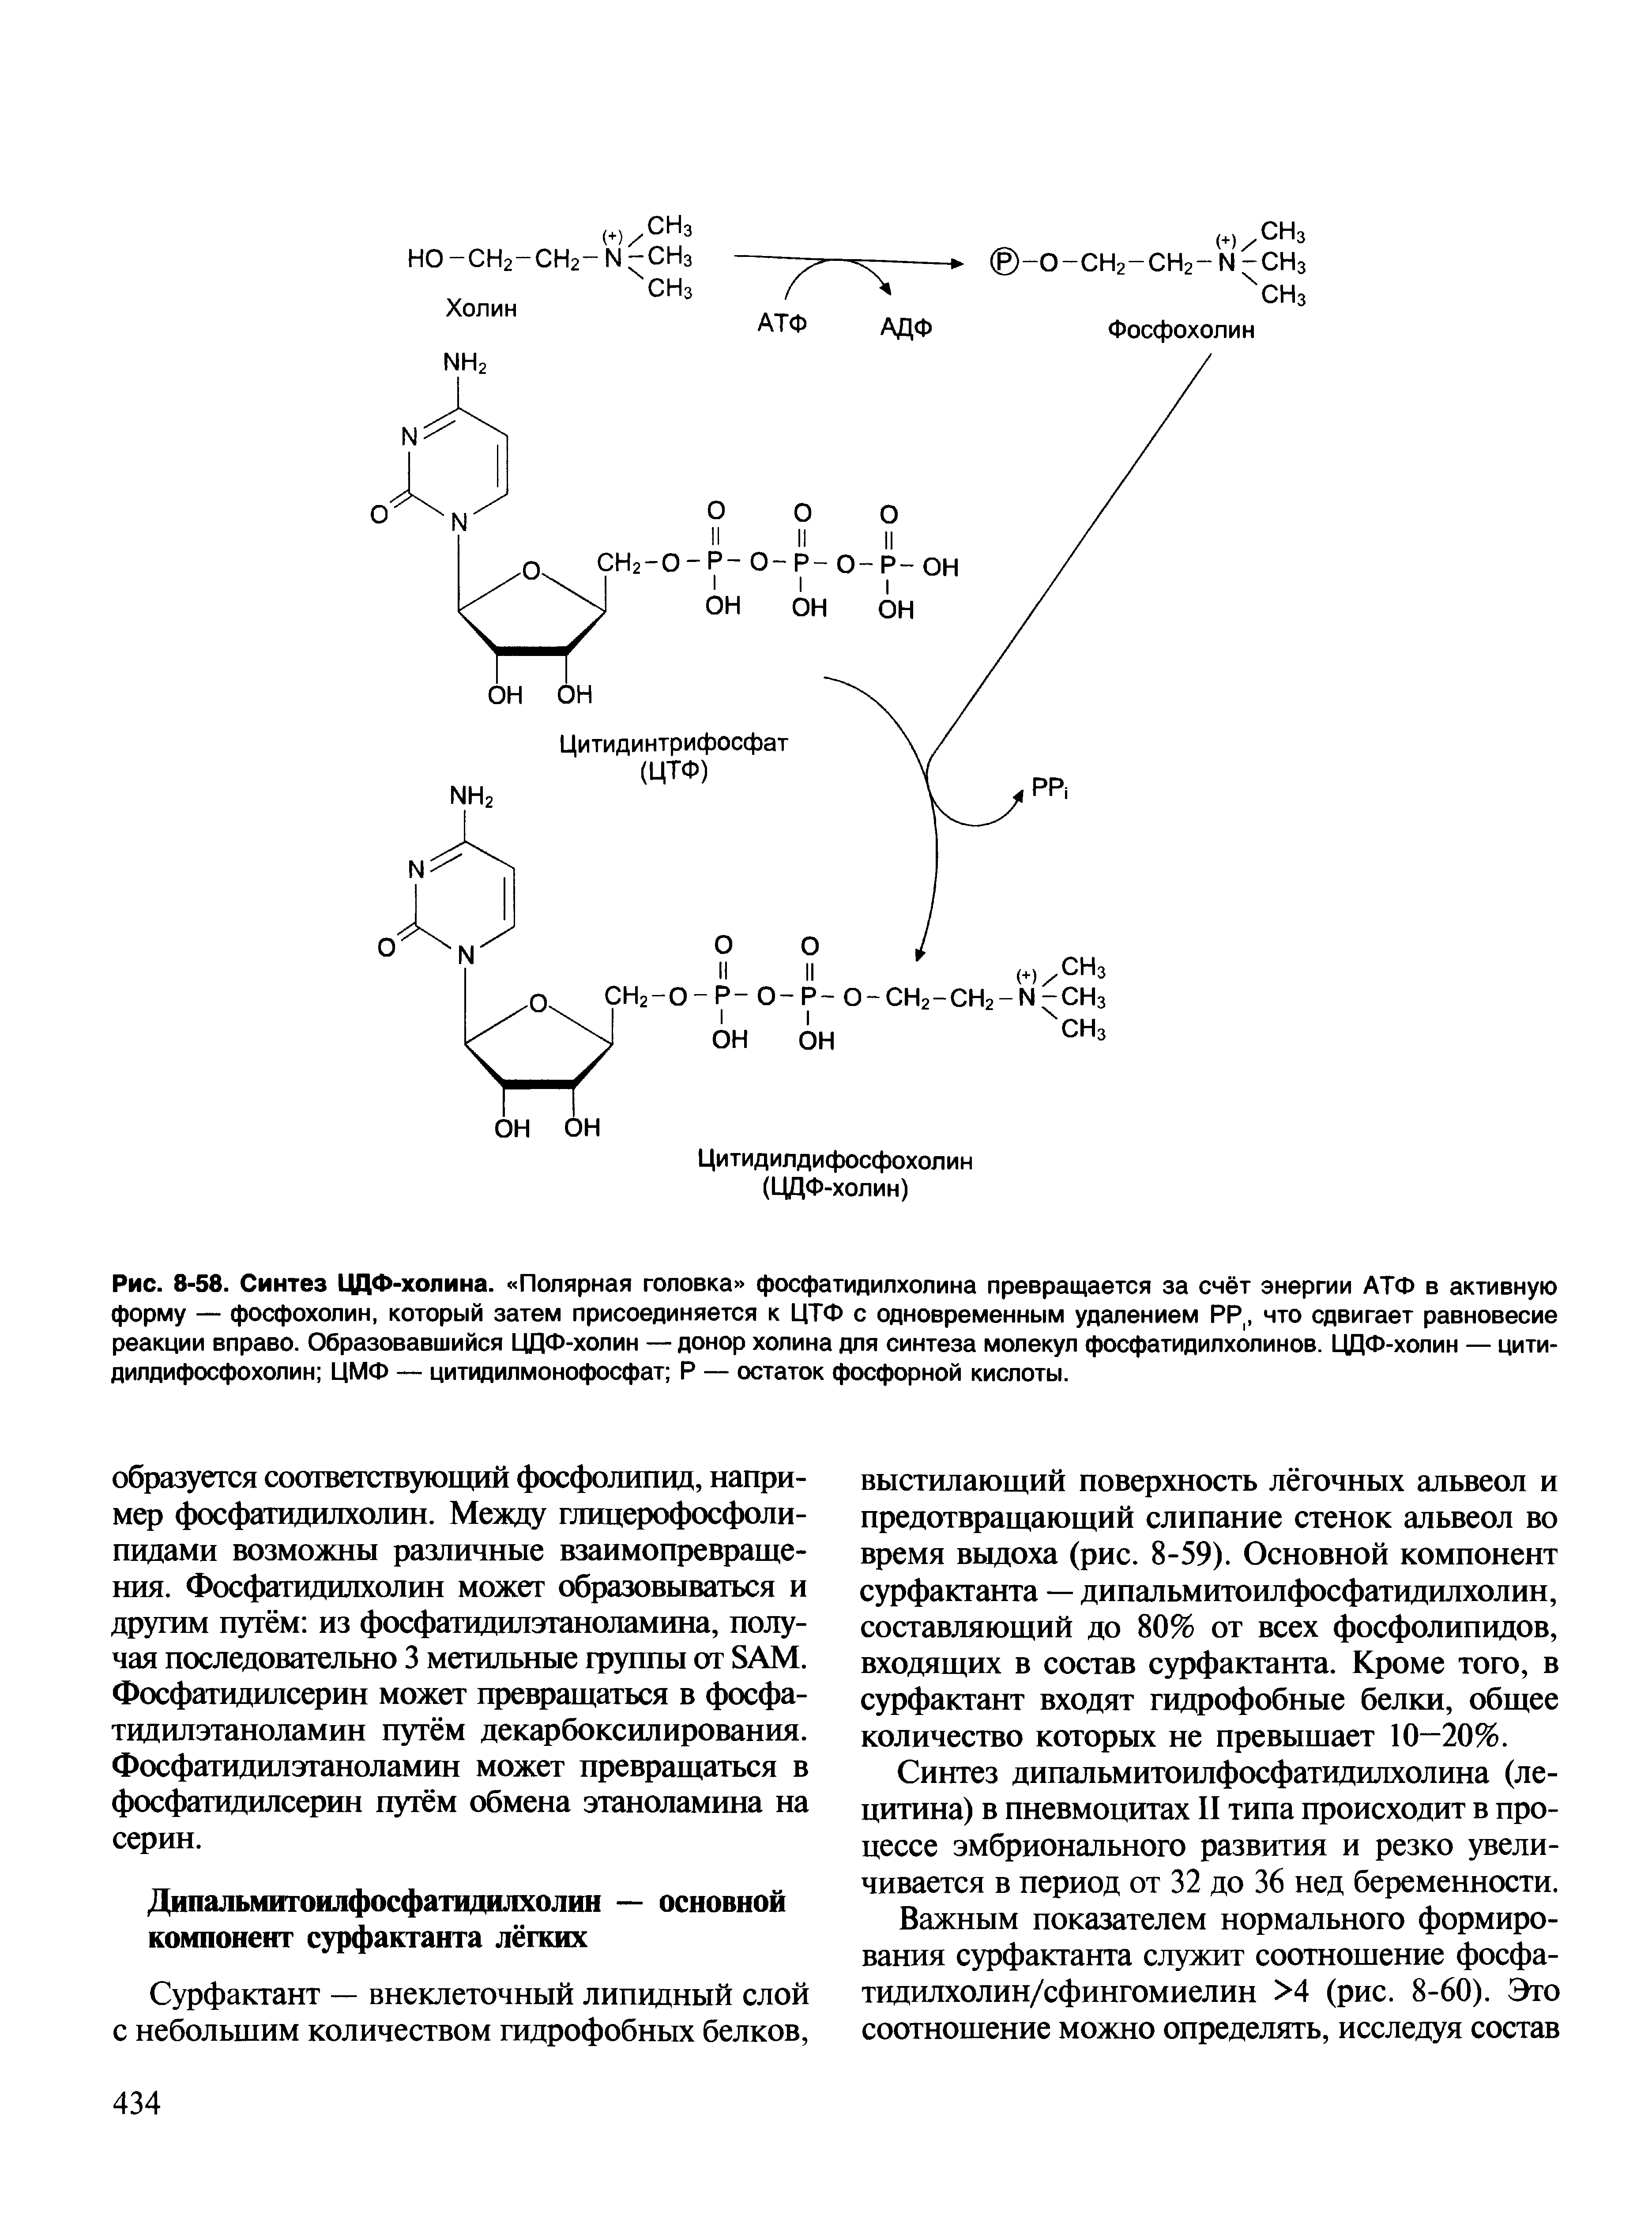 Рис. 8-58. Синтез ЦДФ-холина. Полярная головка фосфатидилхолина превращается за счёт энергии АТФ в активную форму — фосфохолин, который затем присоединяется к ЦТФ с одновременным удалением РР(, что сдвигает равновесие реакции вправо. Образовавшийся ЦДФ-холин — донор холина для синтеза молекул фосфатидилхолинов. ЦДФ-холин — цитидилдифосфохолин ЦМФ — цитидилмонофосфат Р — остаток фосфорной кислоты.